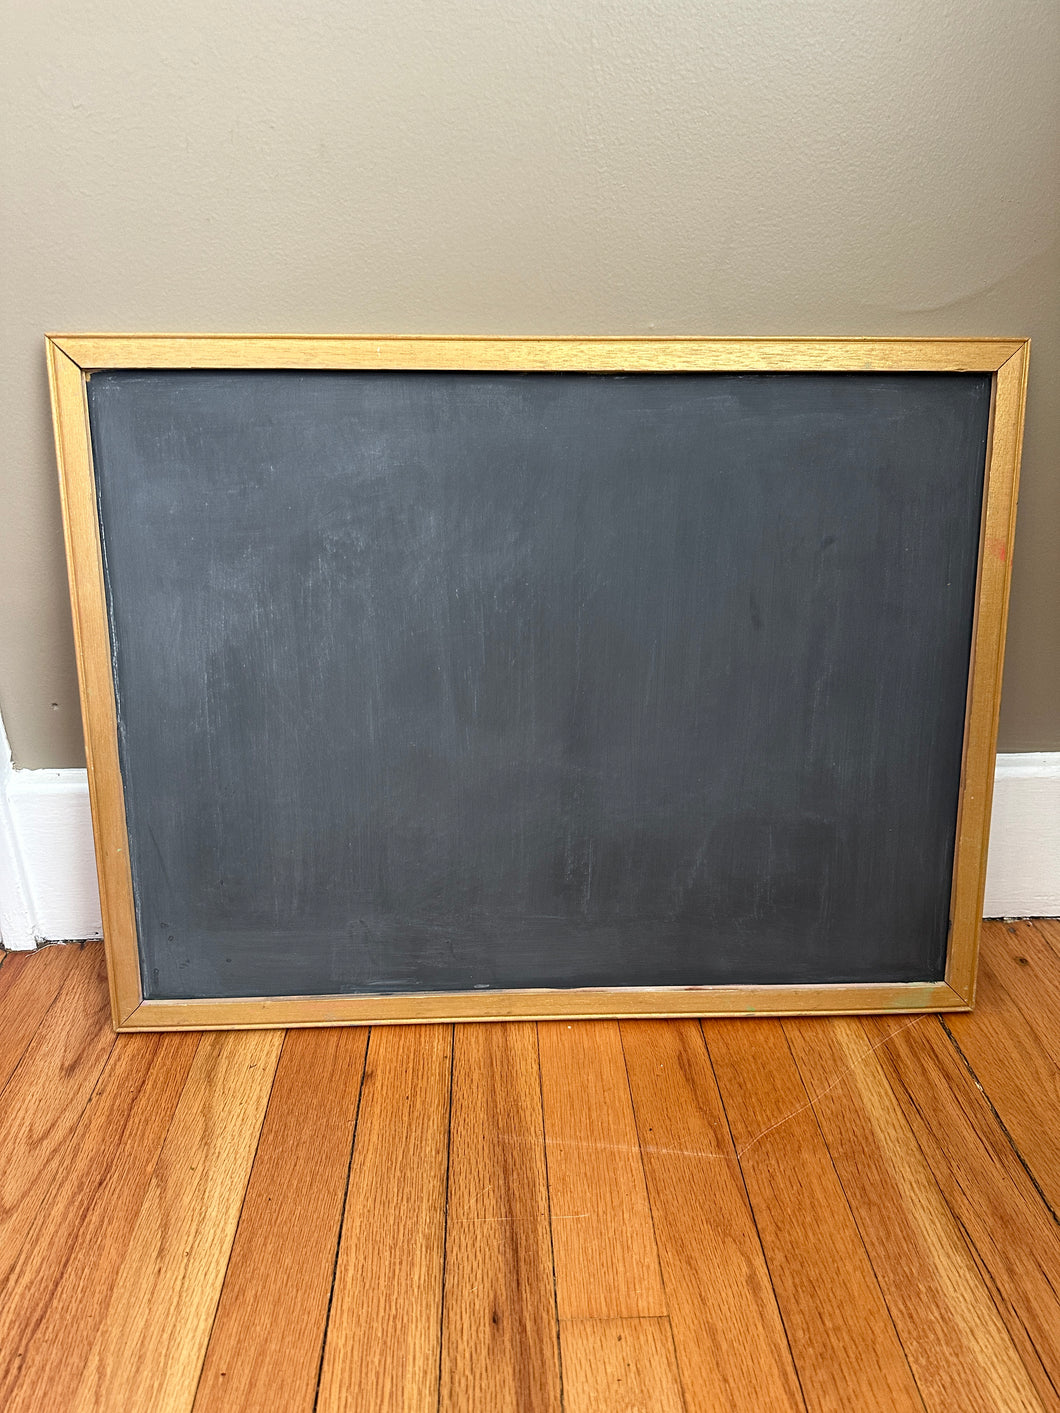 Refinished Vintage Chalkboard